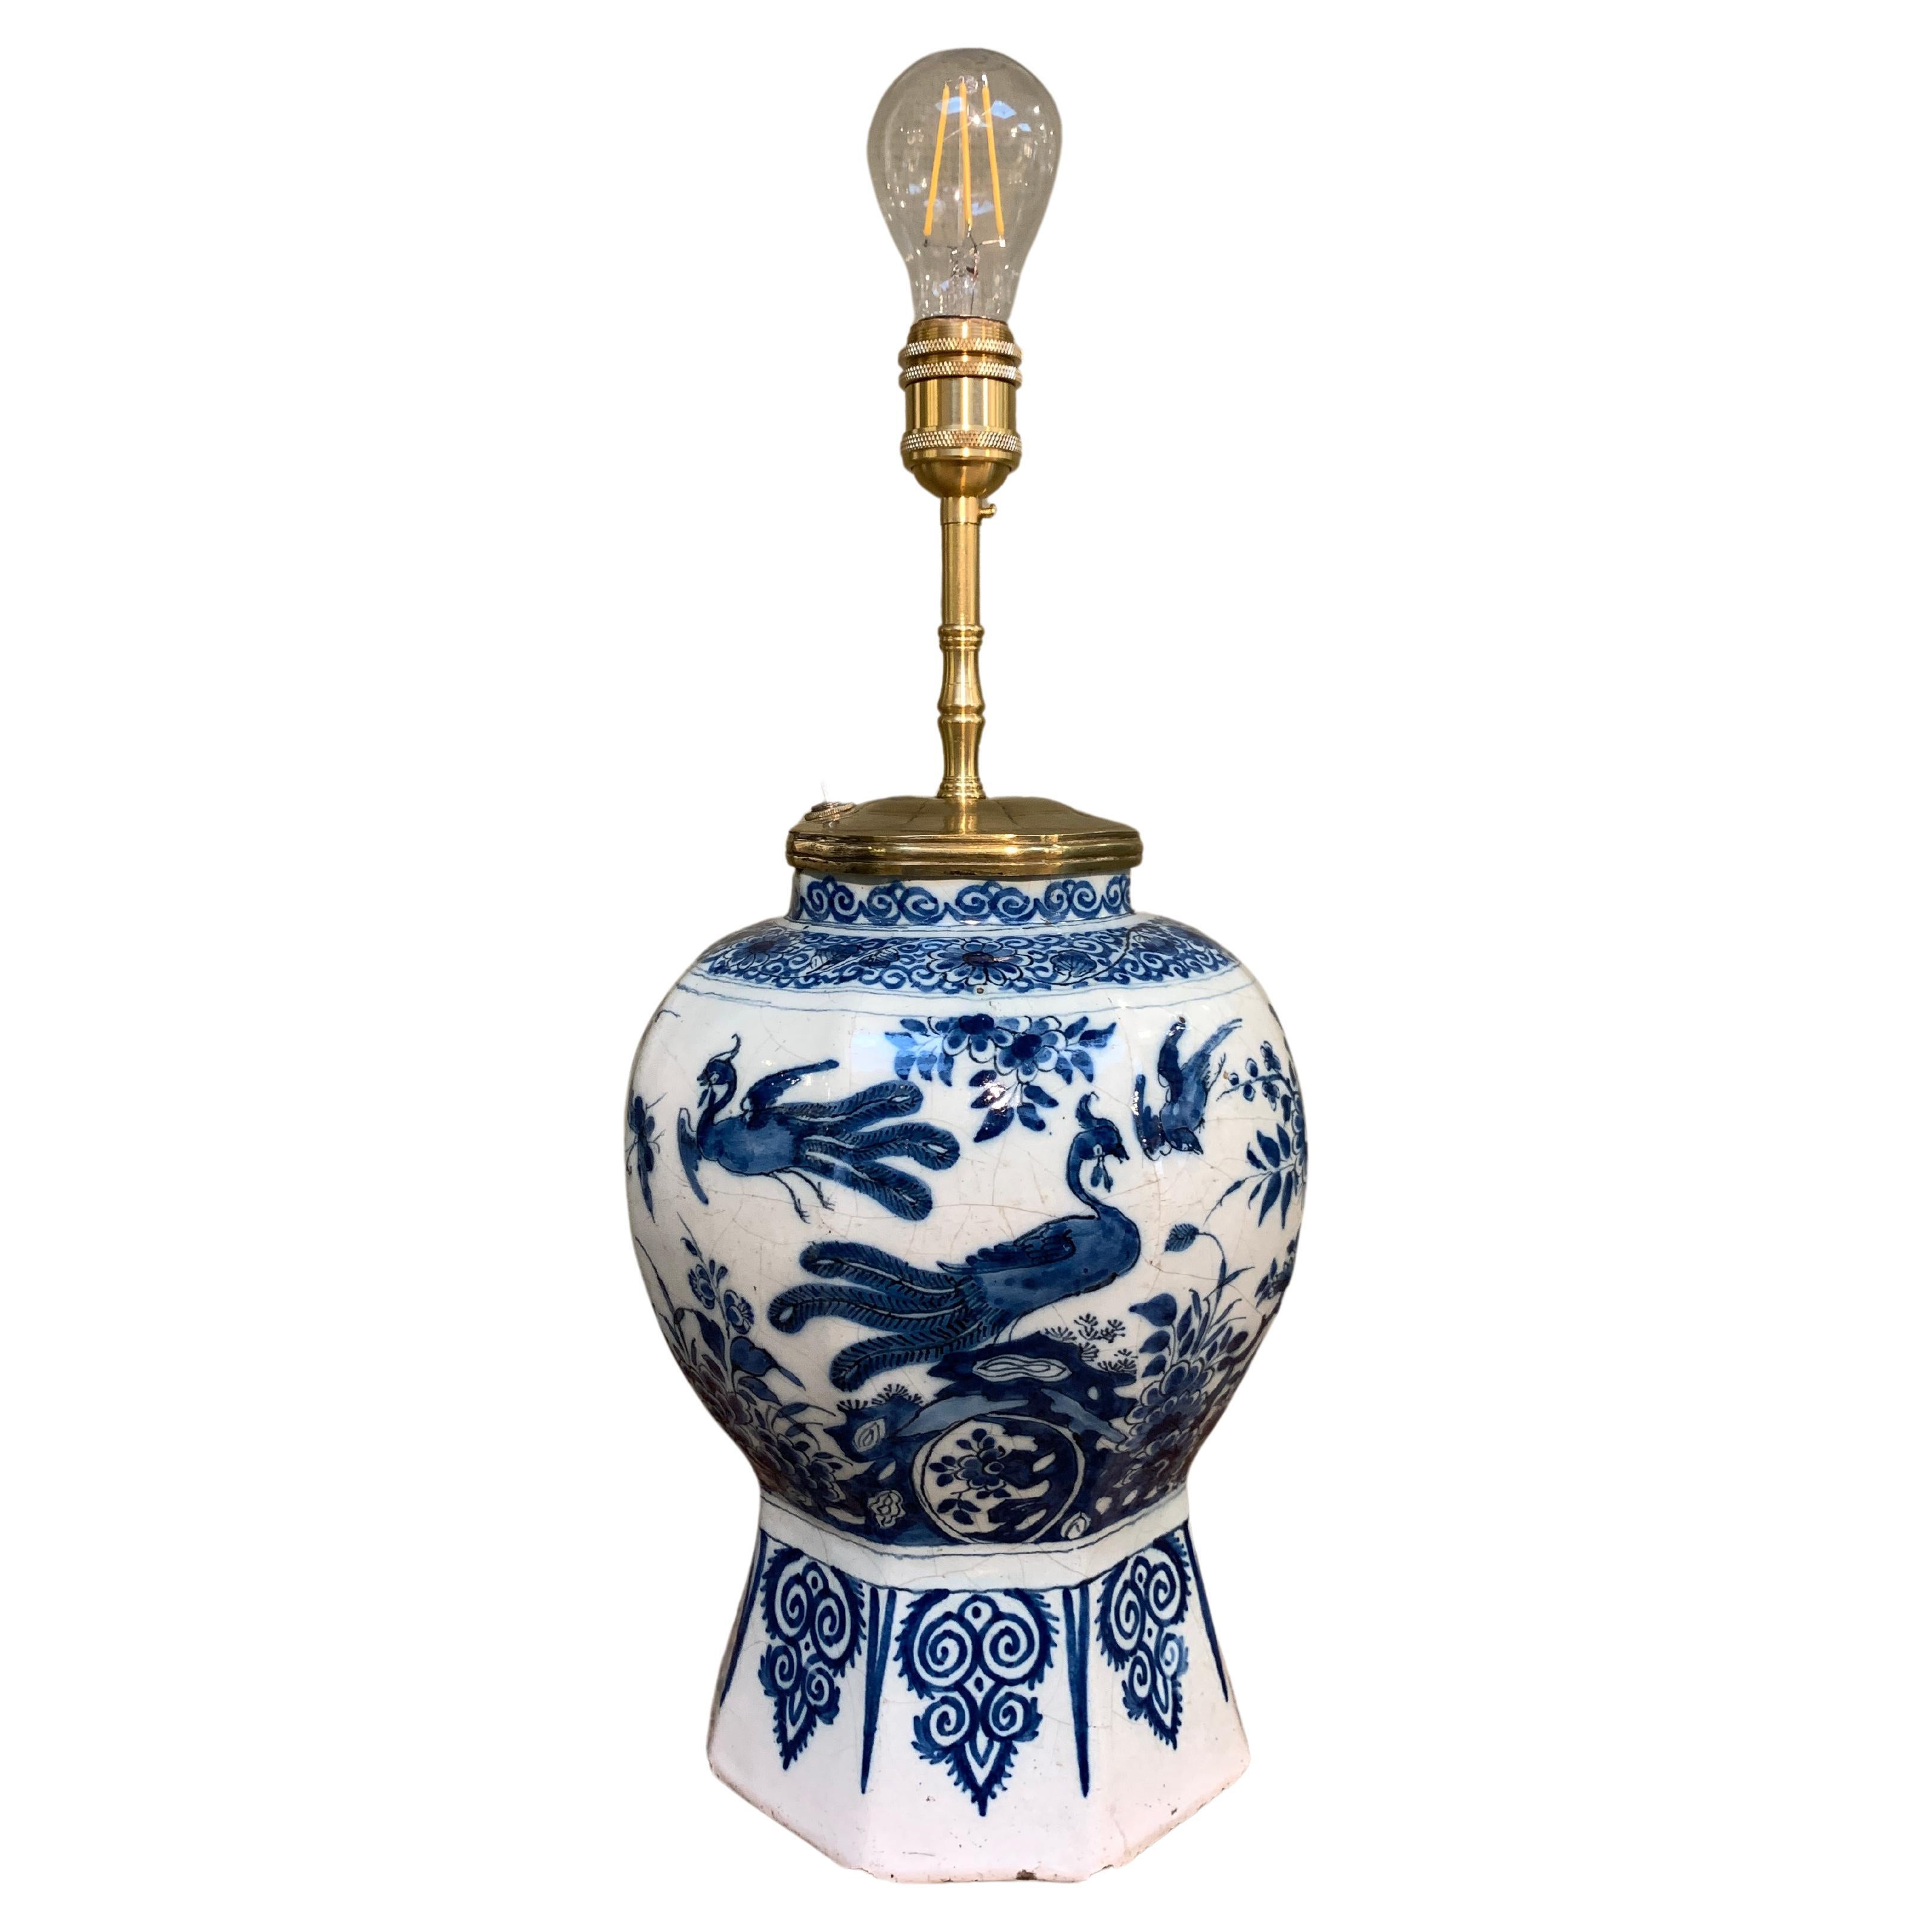 Niederländische Delft-Vase aus dem frühen 18. Jahrhundert, umgewandelt in eine Lampe